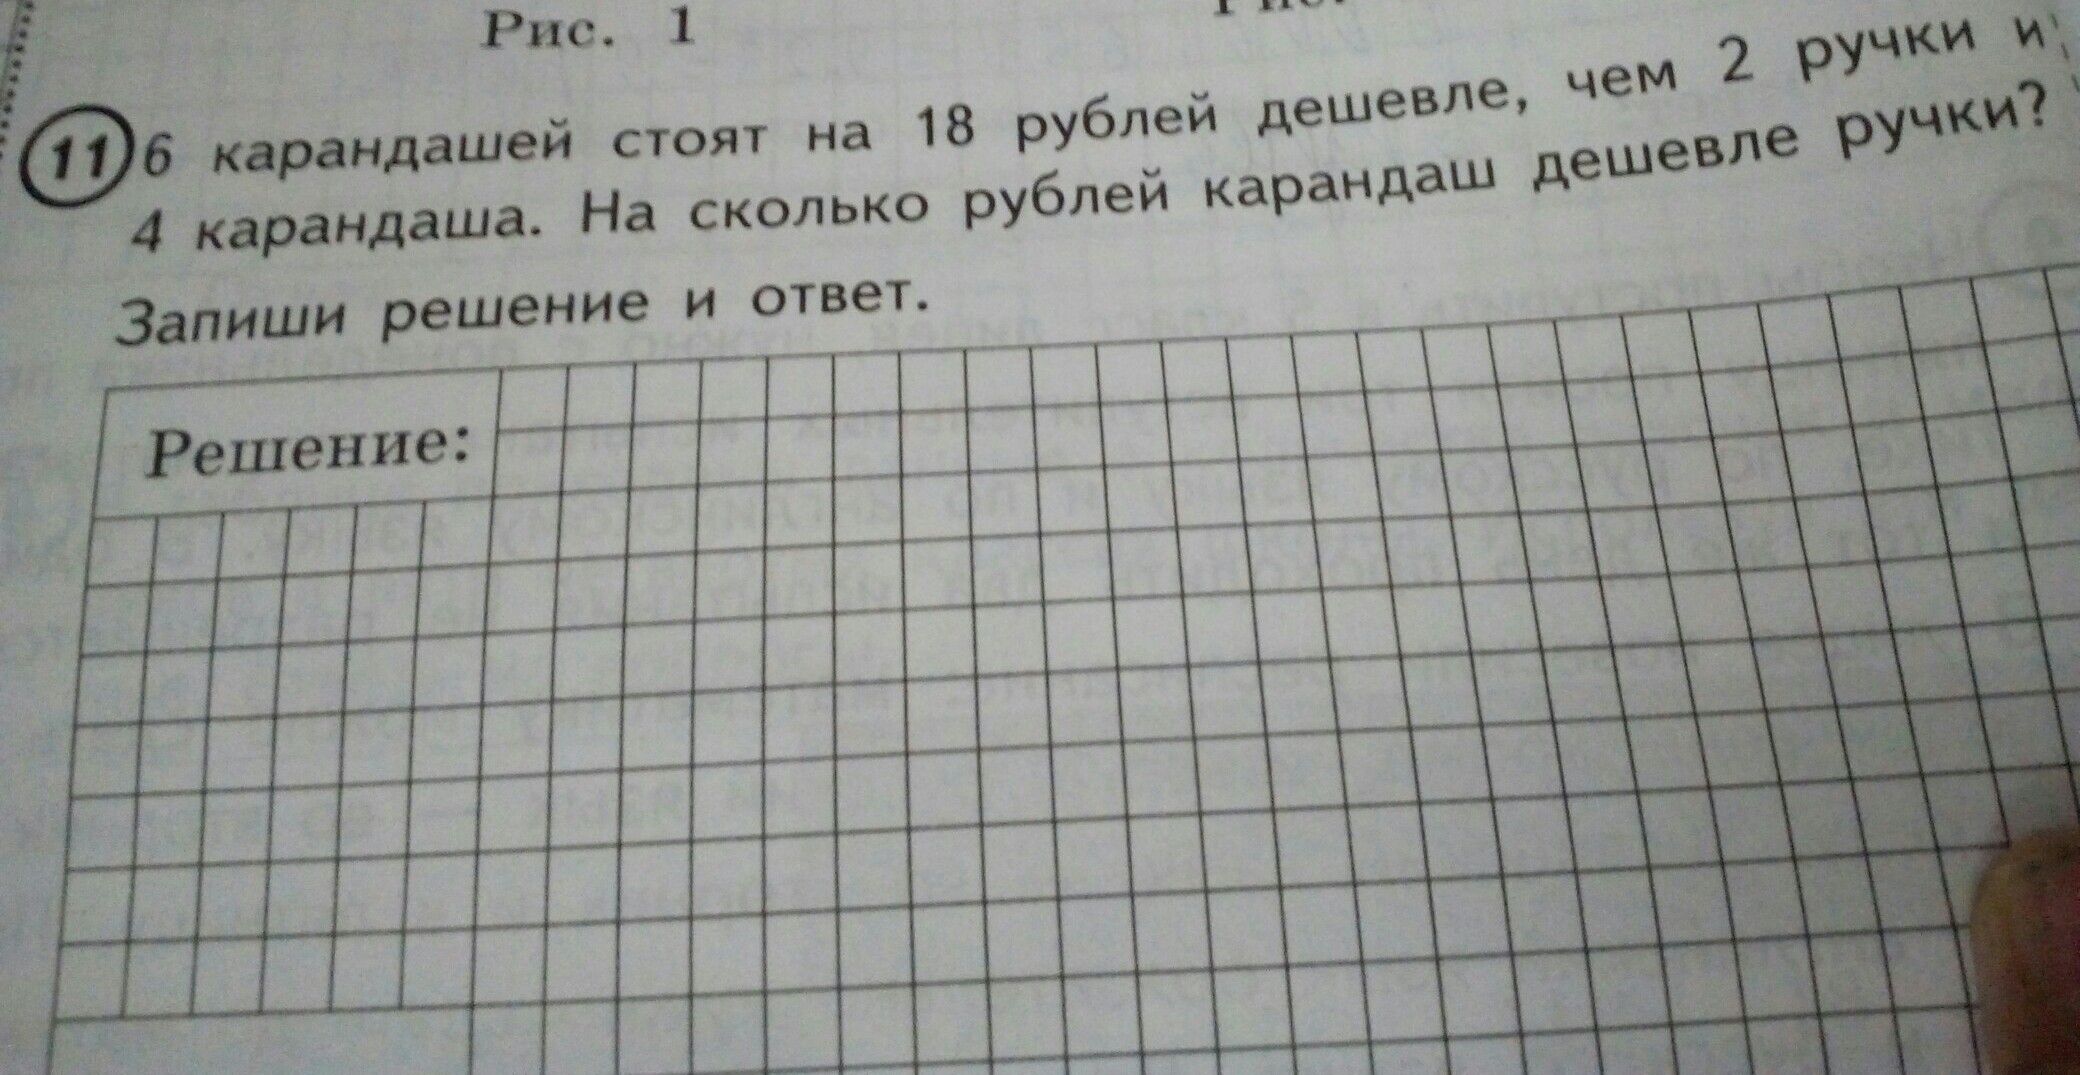 Цена карандаша 6 рублей сколько. 6 Карандашей стоят. 5 Карандашей стоят. 5 Карандашей стоят на 16. Карандаш дешевле ручки на 2 рубля.